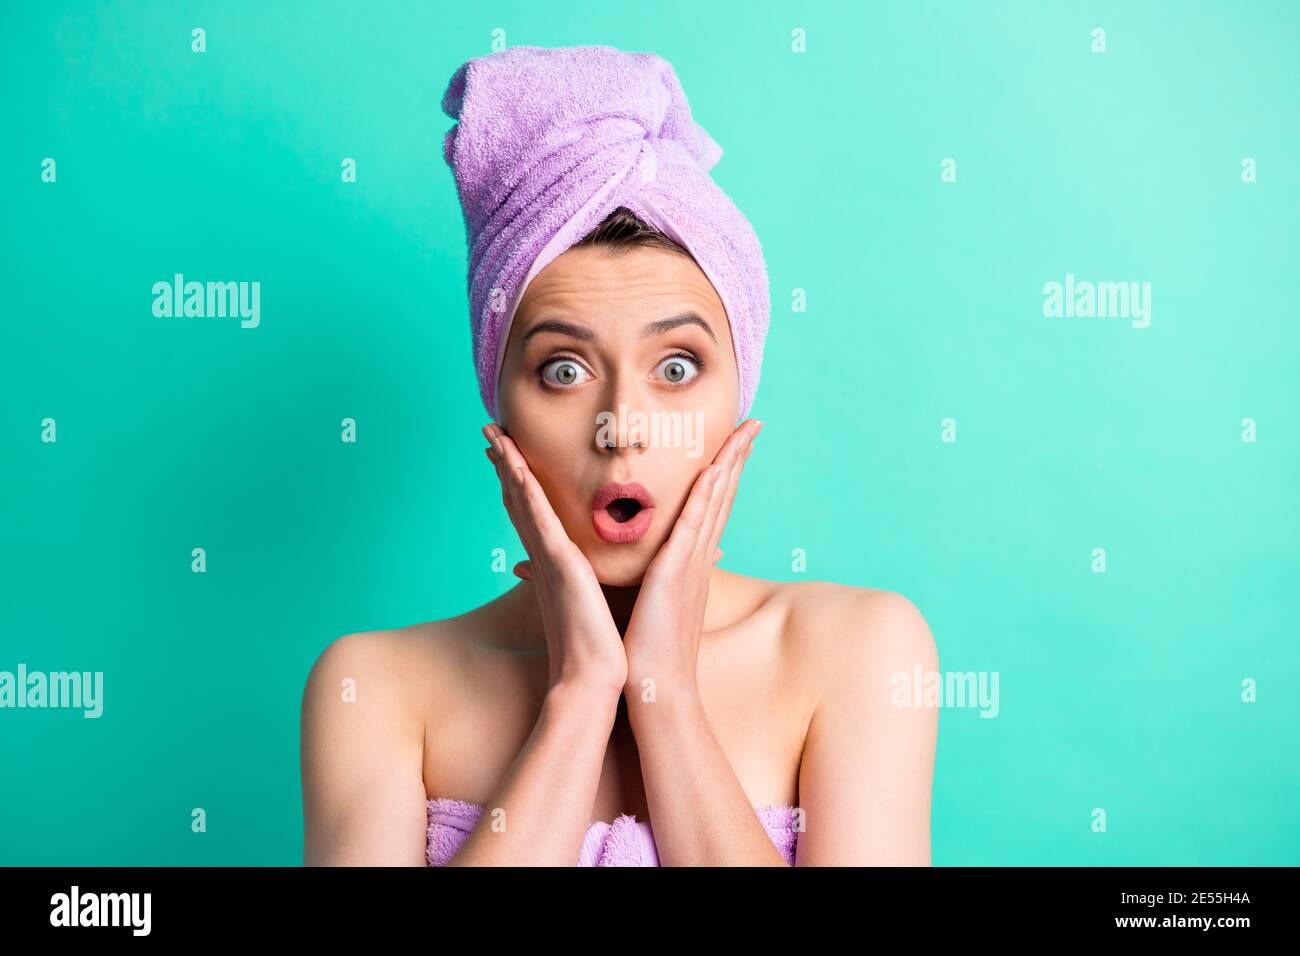 Foto ritratto scioccato donna turbante sulla testa facendo procedure igieniche i chekbones toccanti isolano lo sfondo dai colori vivaci dell'adolente Foto Stock